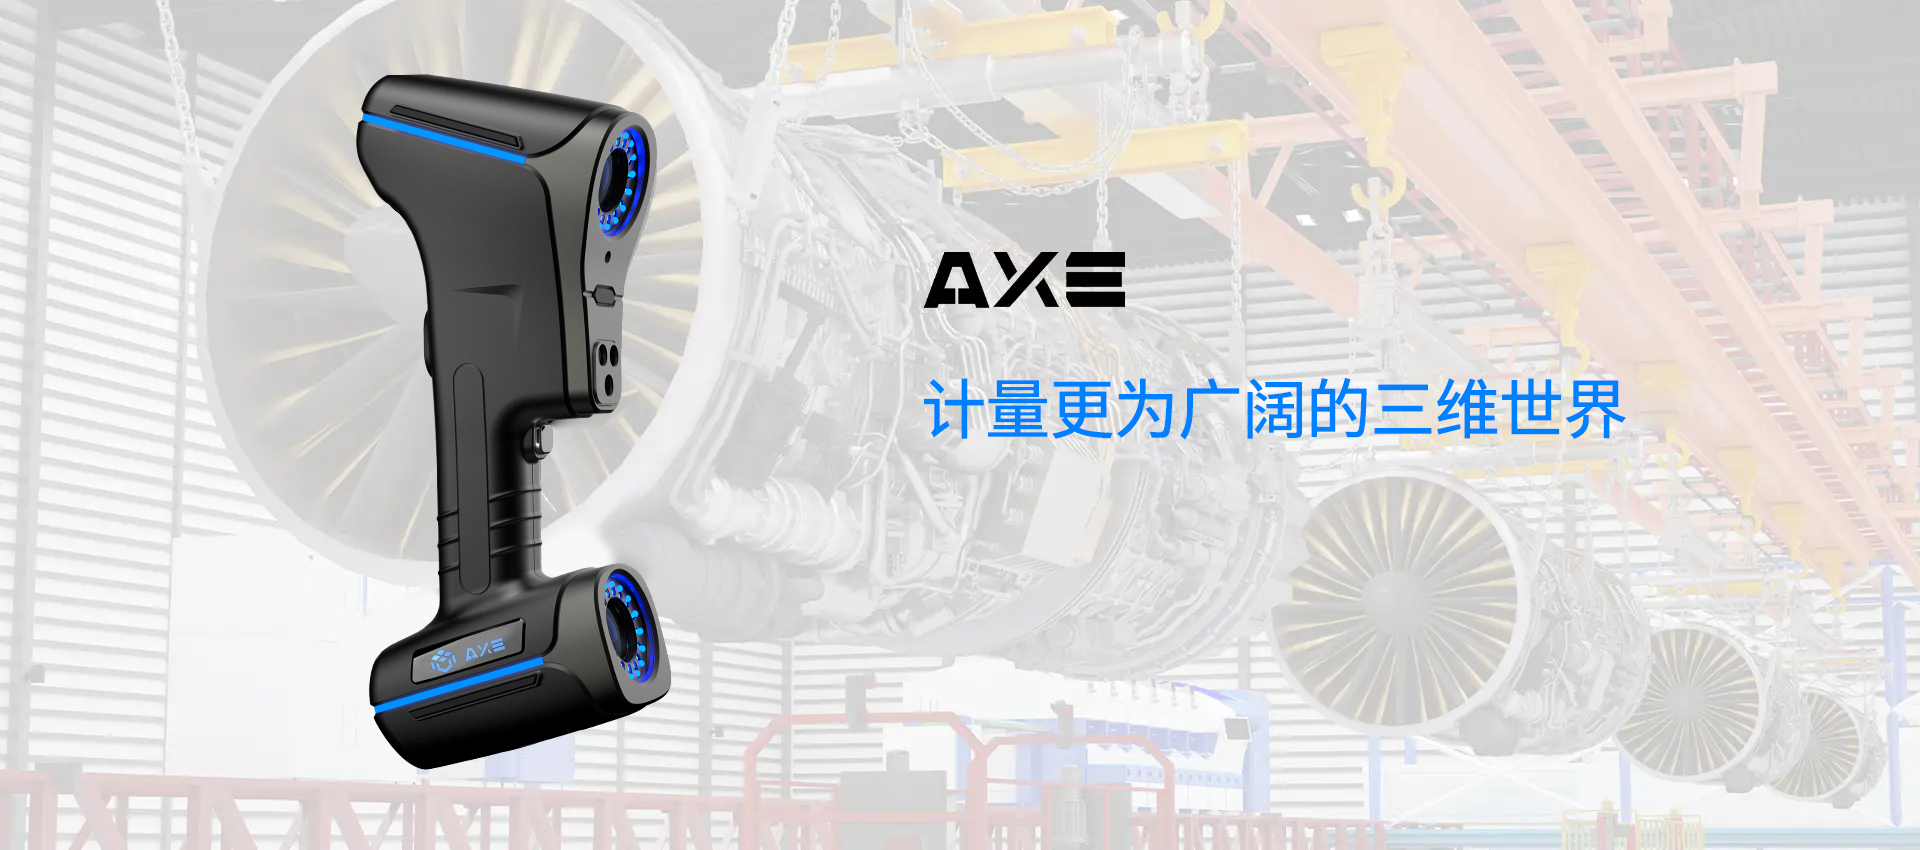 AXE-B Series 3D Scanner